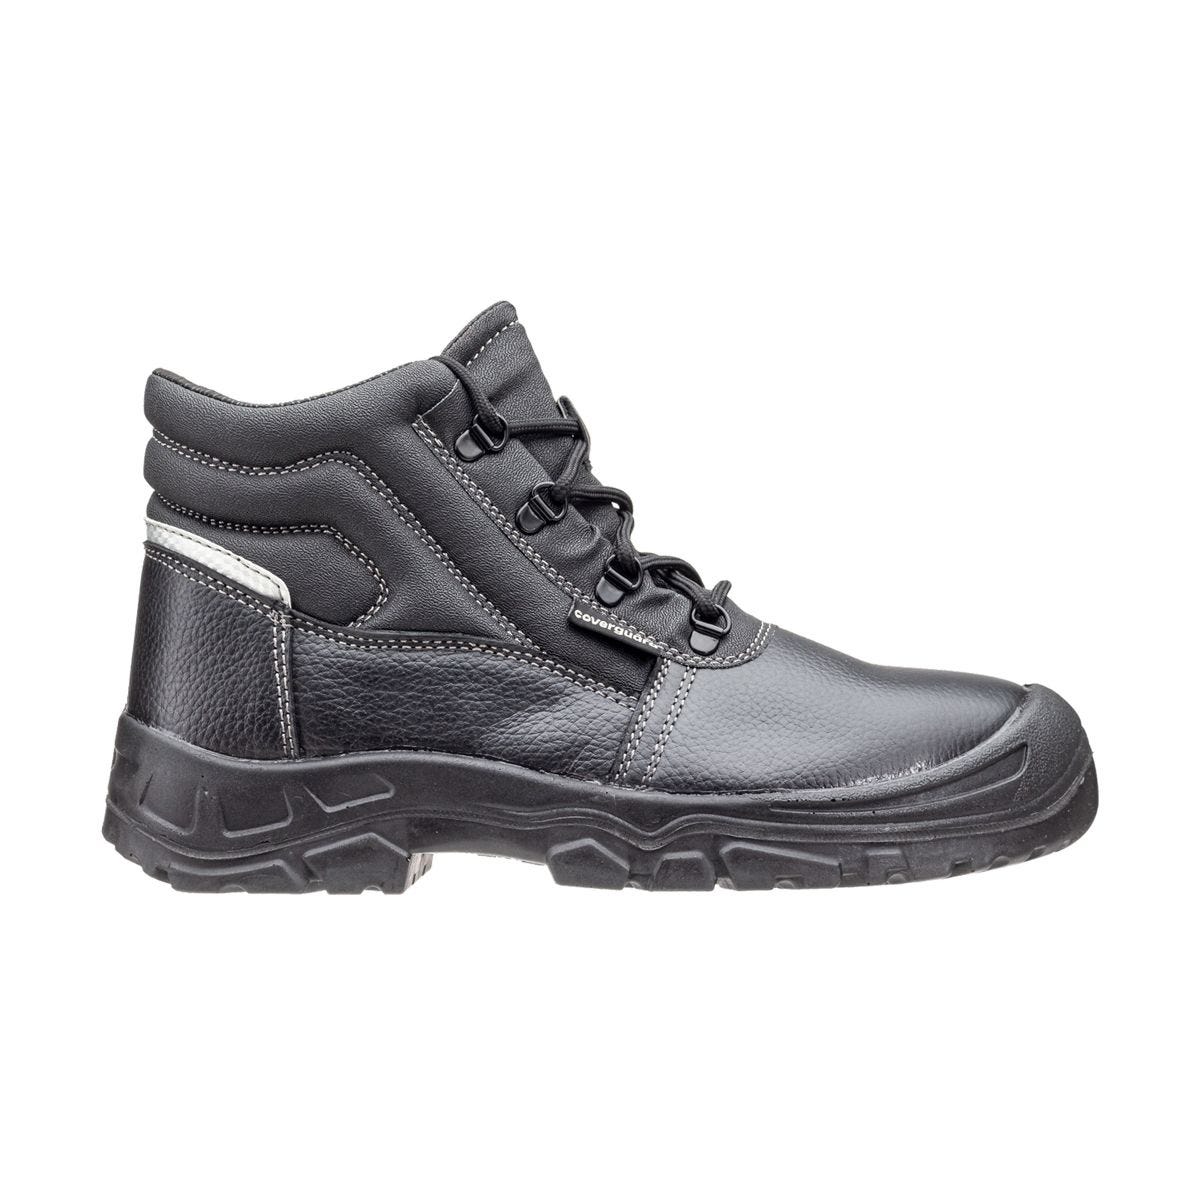 Chaussures de sécurité hautes Azurite II S3 ESD noir - Coverguard - Taille 40 1